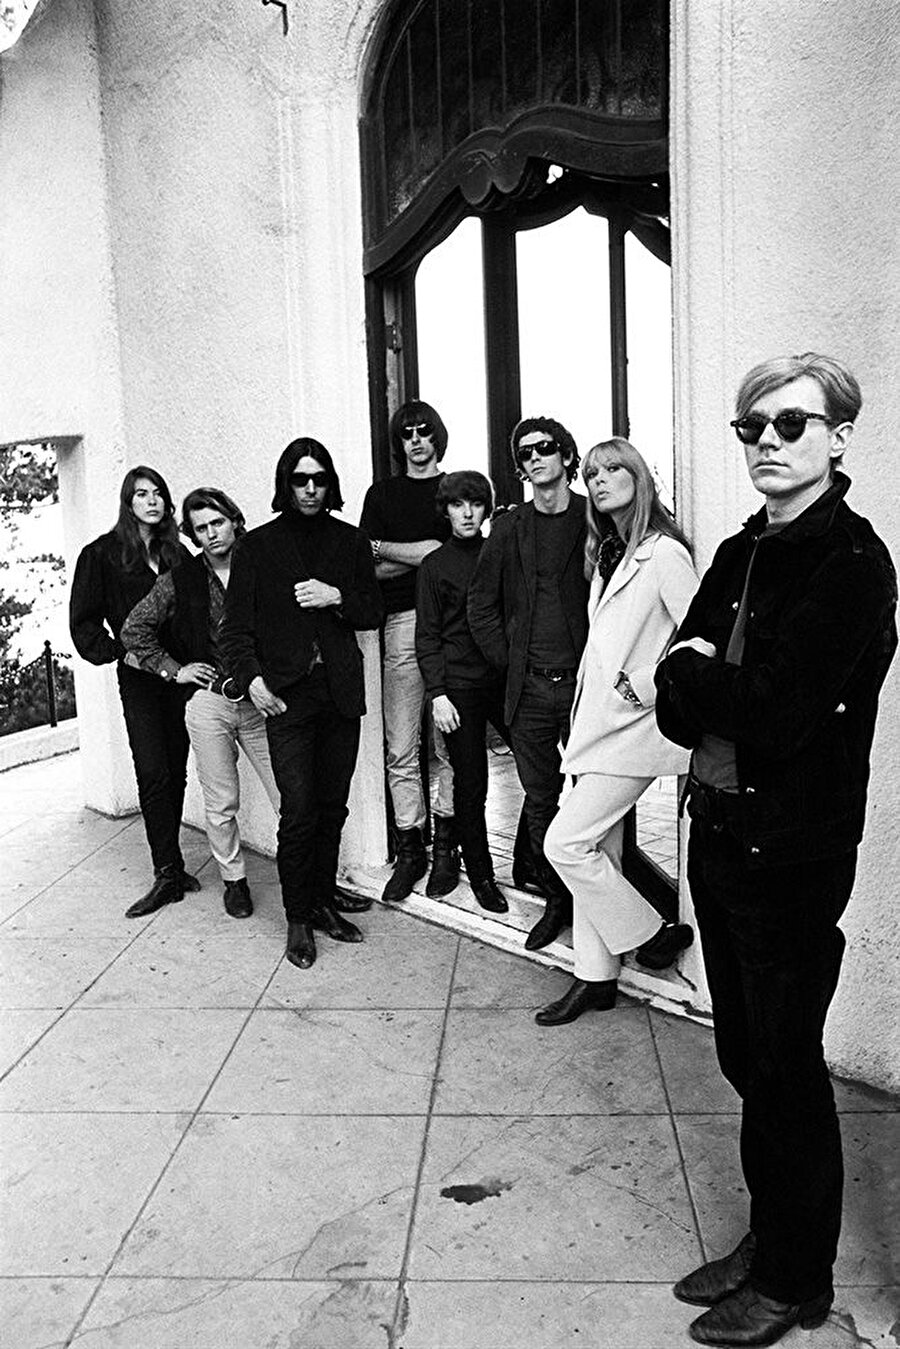 Underground Sinema
Deneysel sinema olarak da tanımlanan Underground sinemayı, Warhol hayatı boyunca deneysel film ve video hazırladı. "Uyku", "İlyada Tutkusu" filmlerine bakmanızı önerebiliriz.